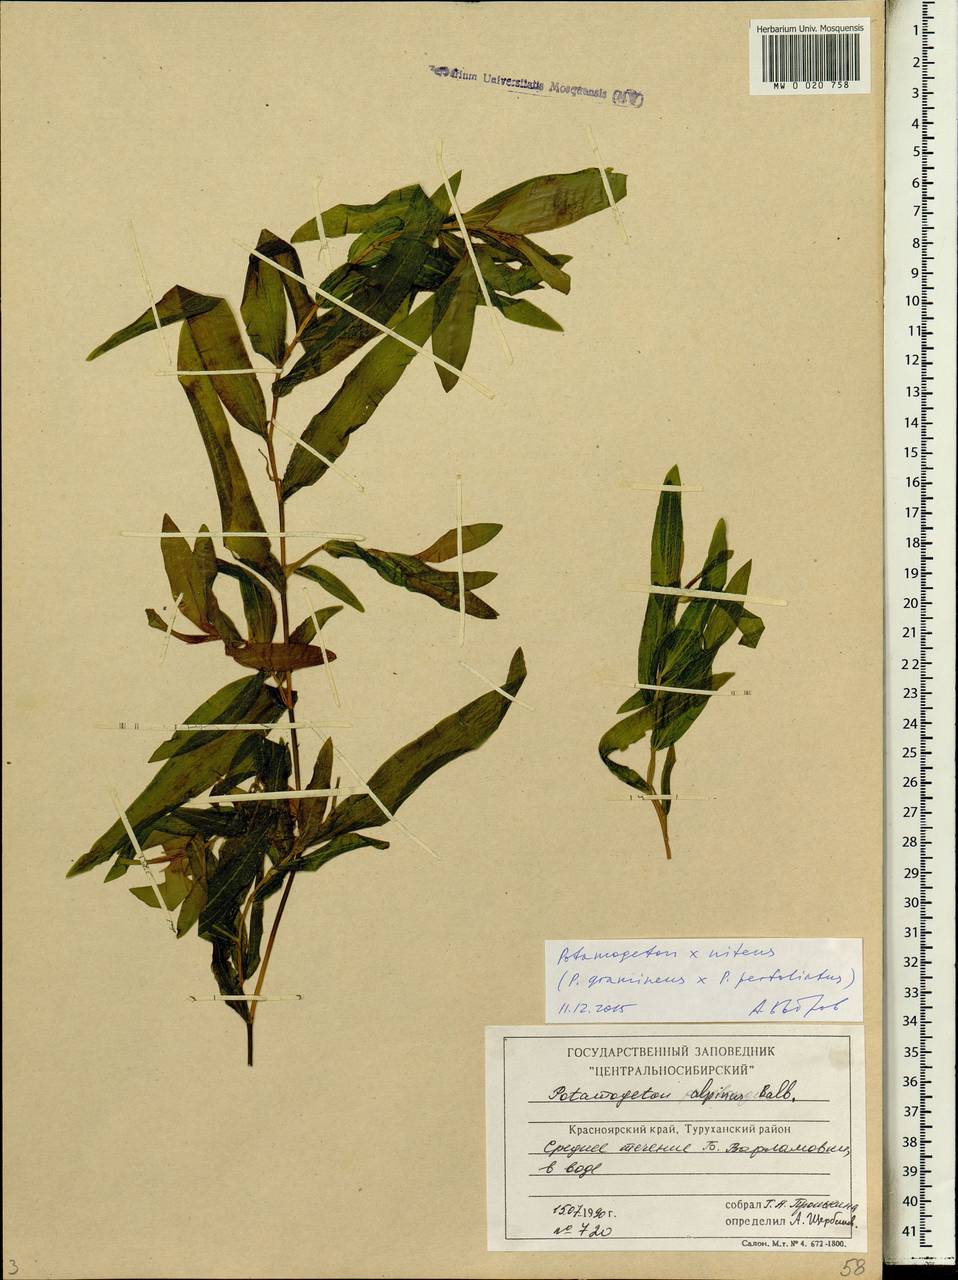 Potamogeton × nitens Weber, Сибирь, Центральная Сибирь (S3) (Россия)